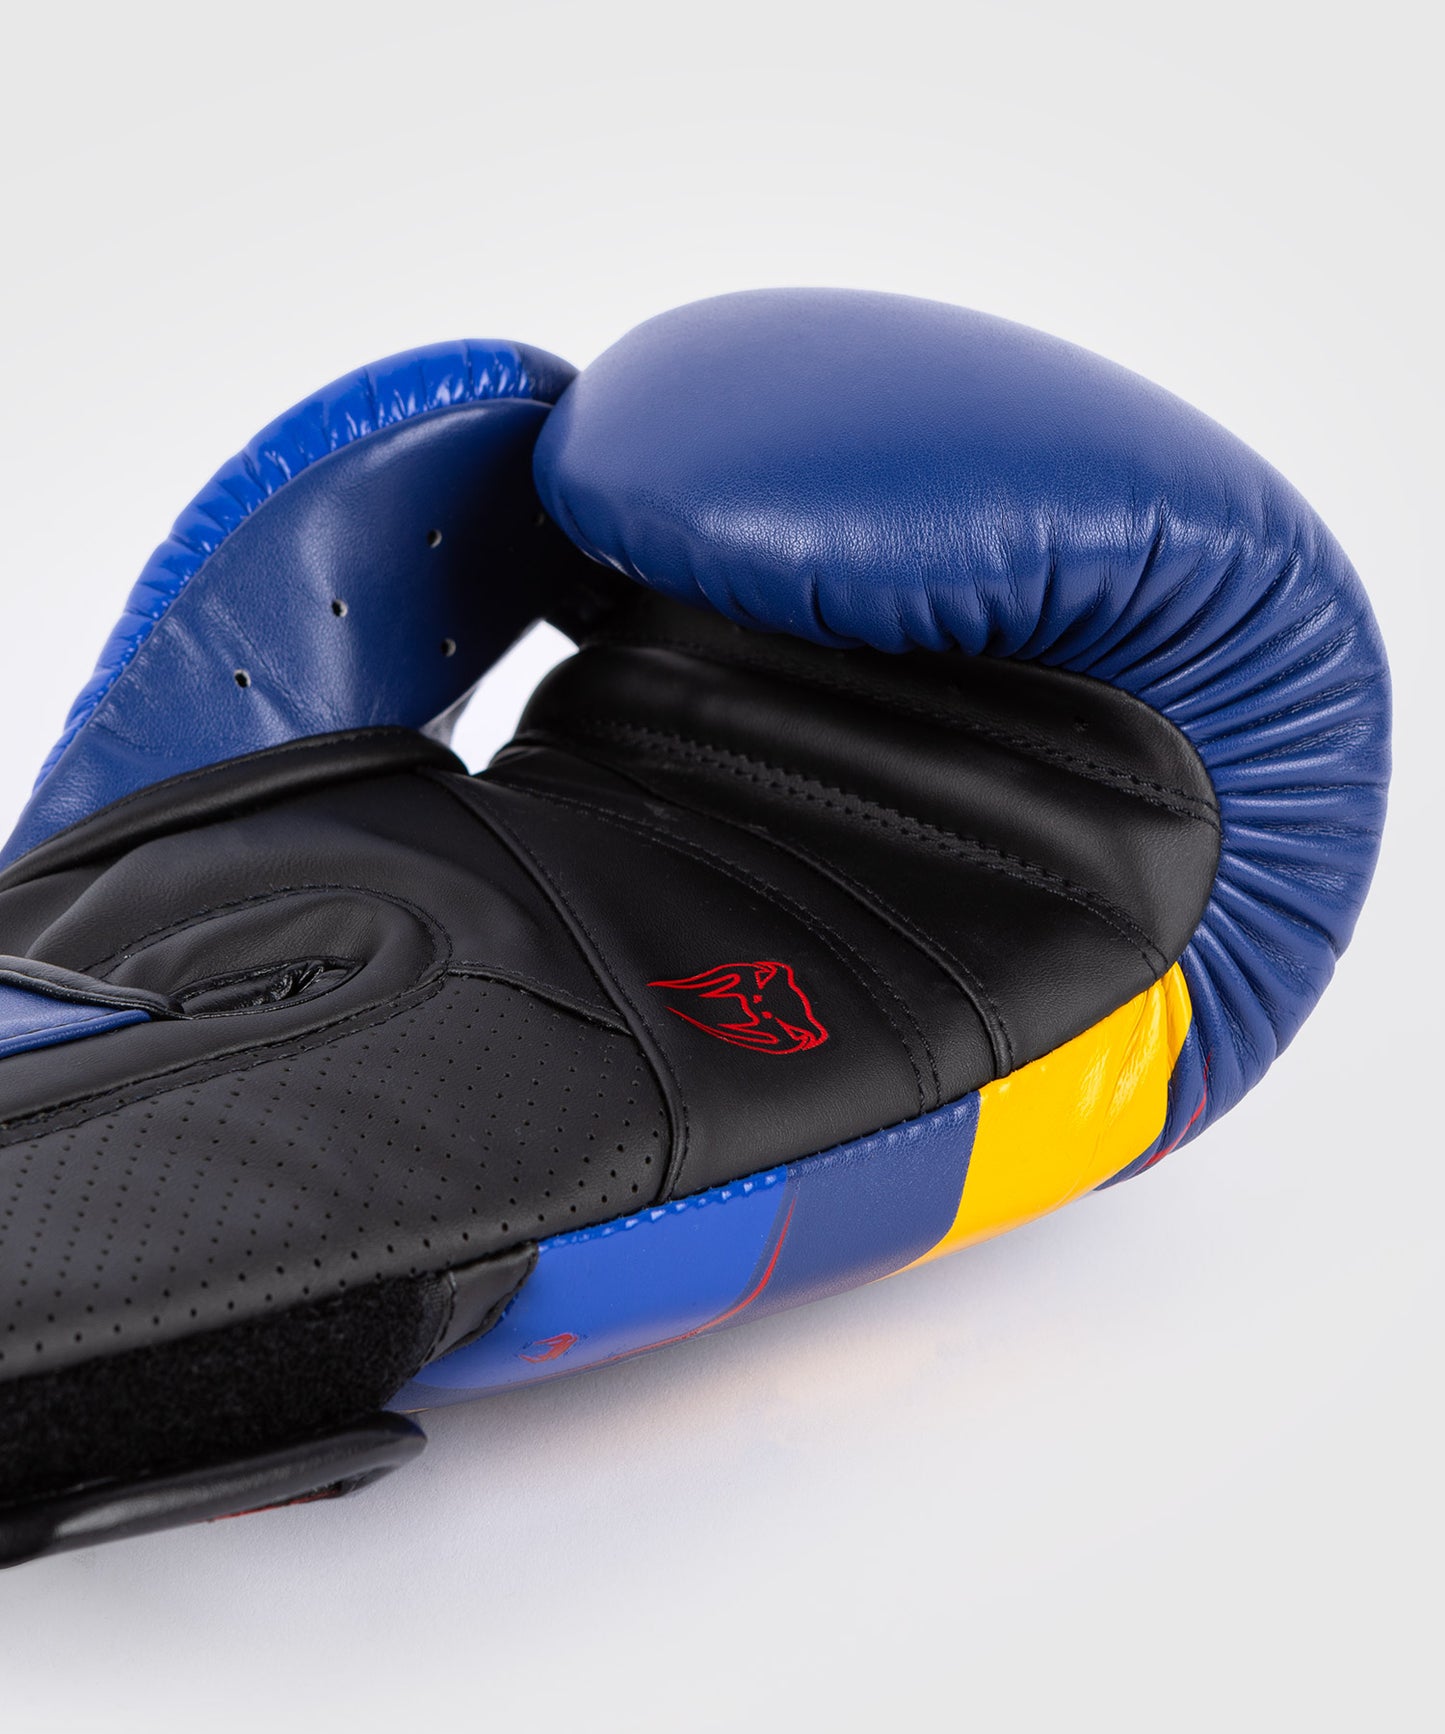 Venum Elite Evo Боксерские перчатки - синий/желтый